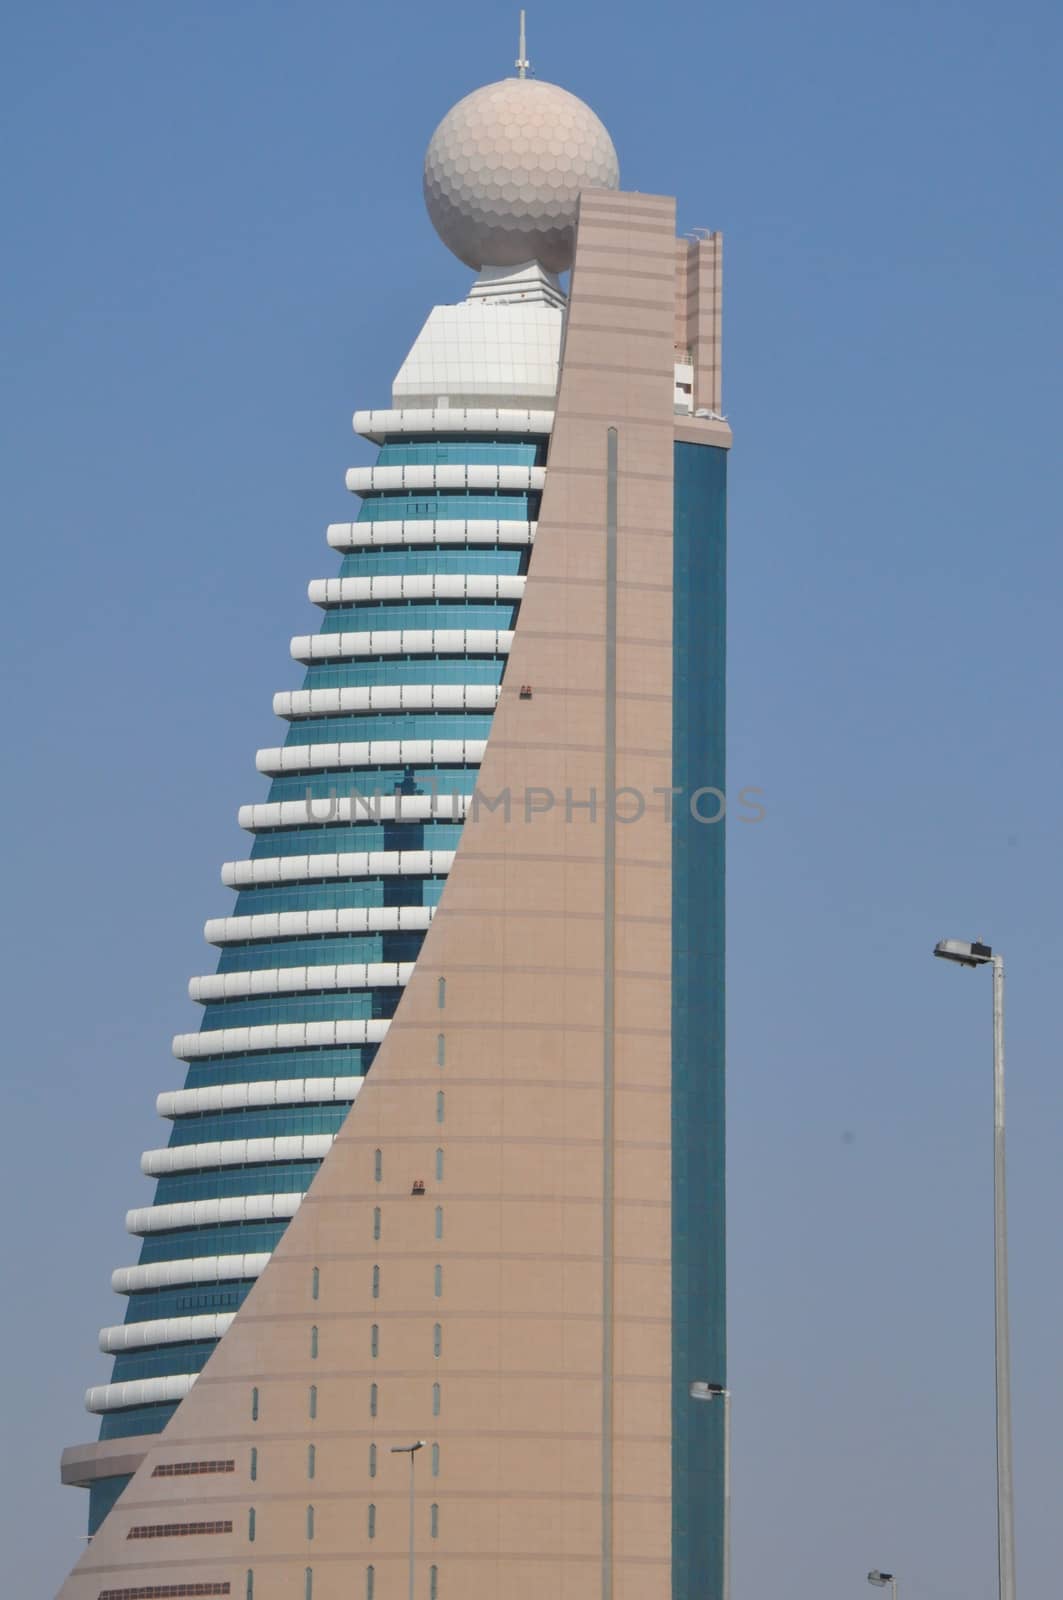 Etisalat Tower 2 in Dubai, UAE by sainaniritu